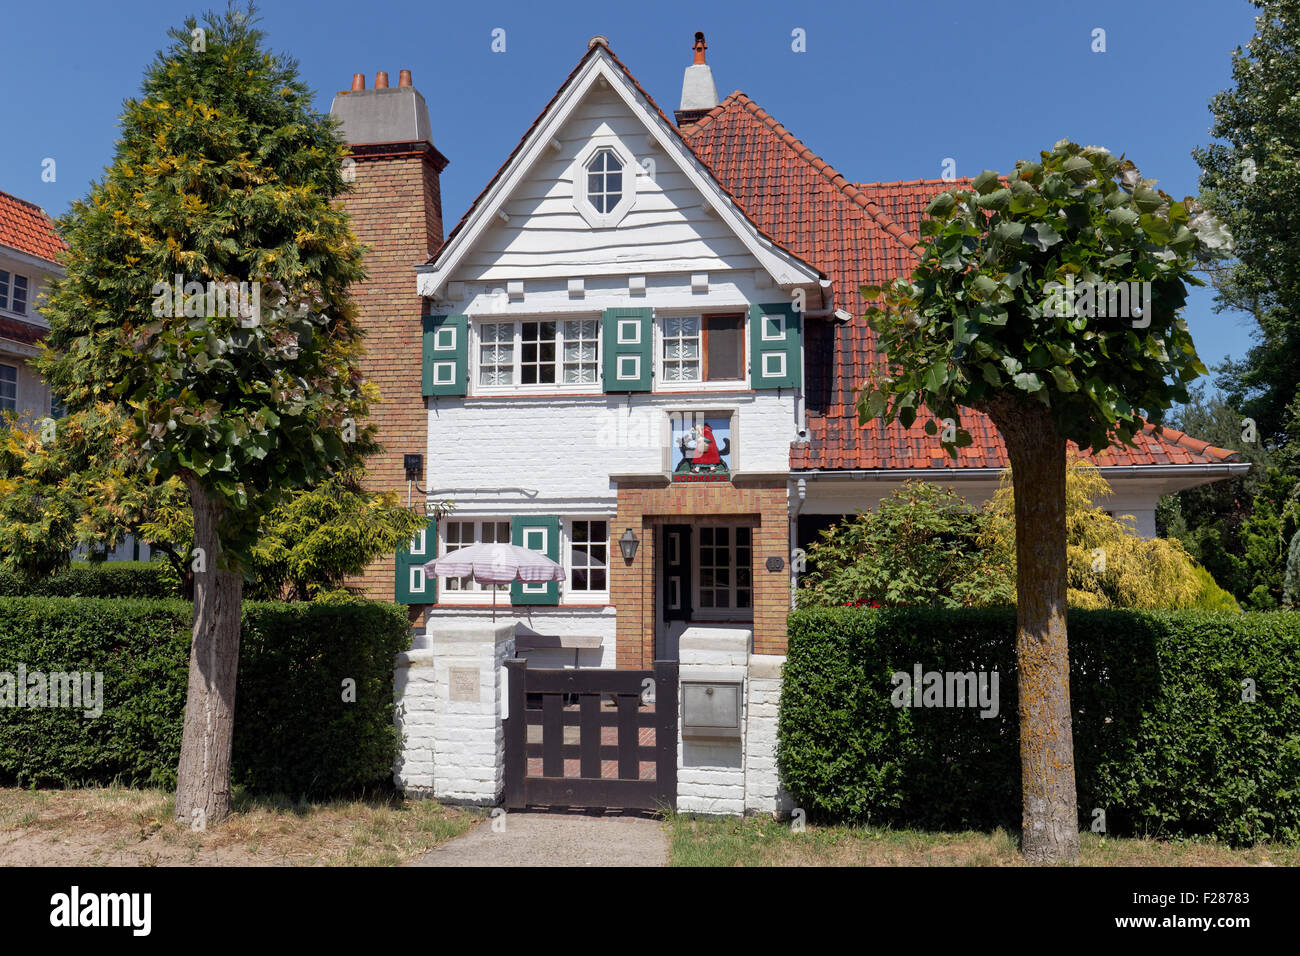 Villa, maison historique, style de Concessie uptown, station balnéaire de Haan, côte belge, Flandre occidentale, Belgique Banque D'Images